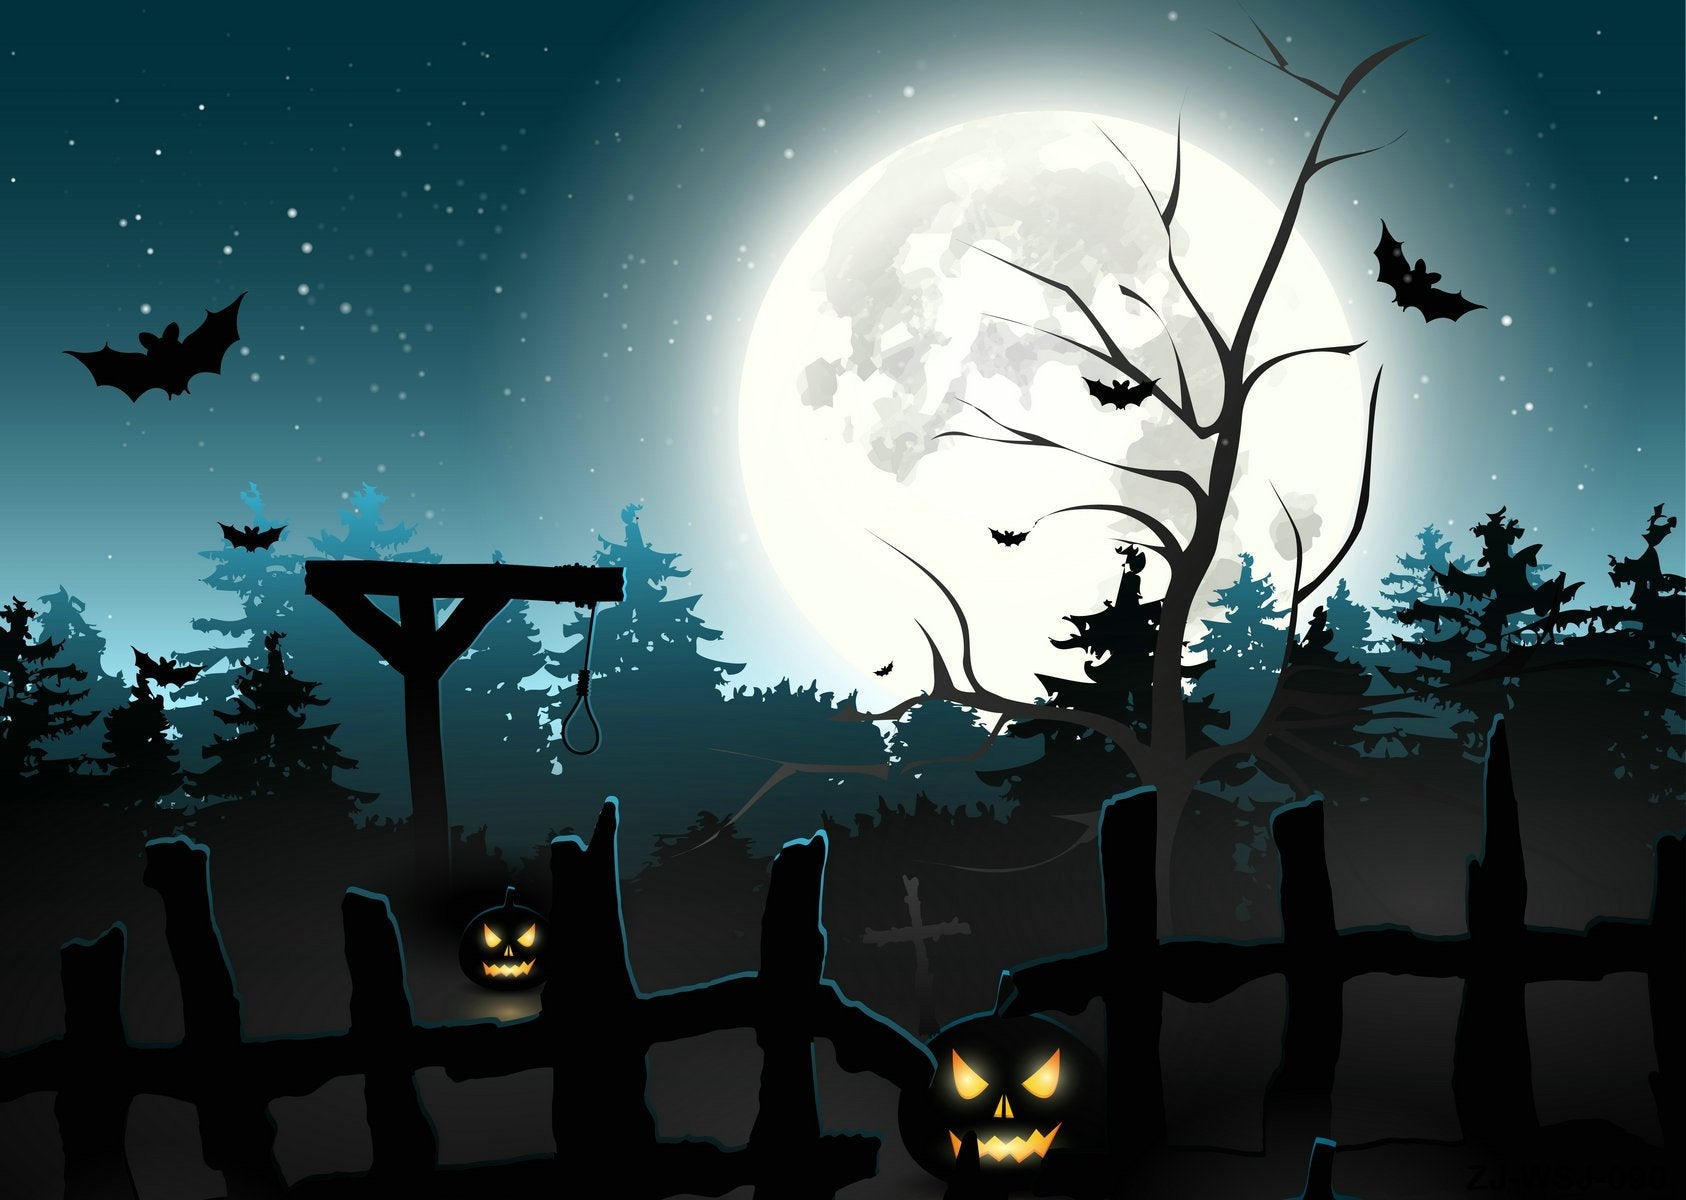 Katebackdrop：Kate Halloween photo backdrop moon horrible night